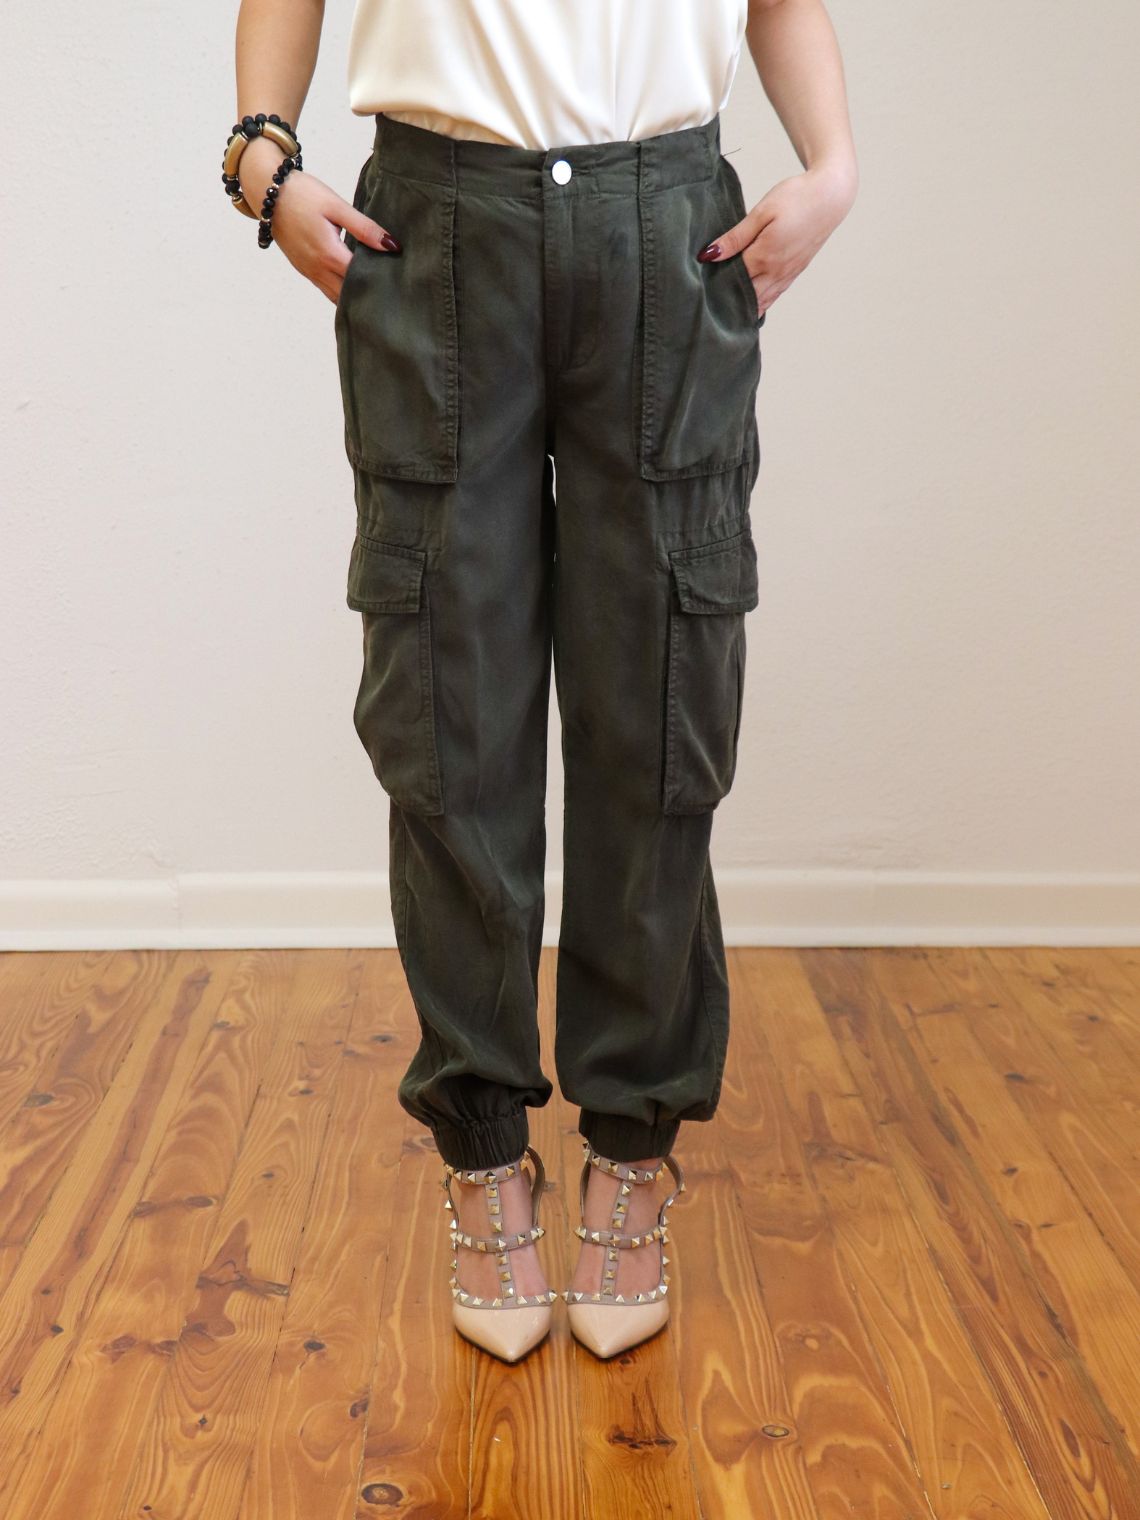 Women's Flare Pants for sale in Leona, Kansas